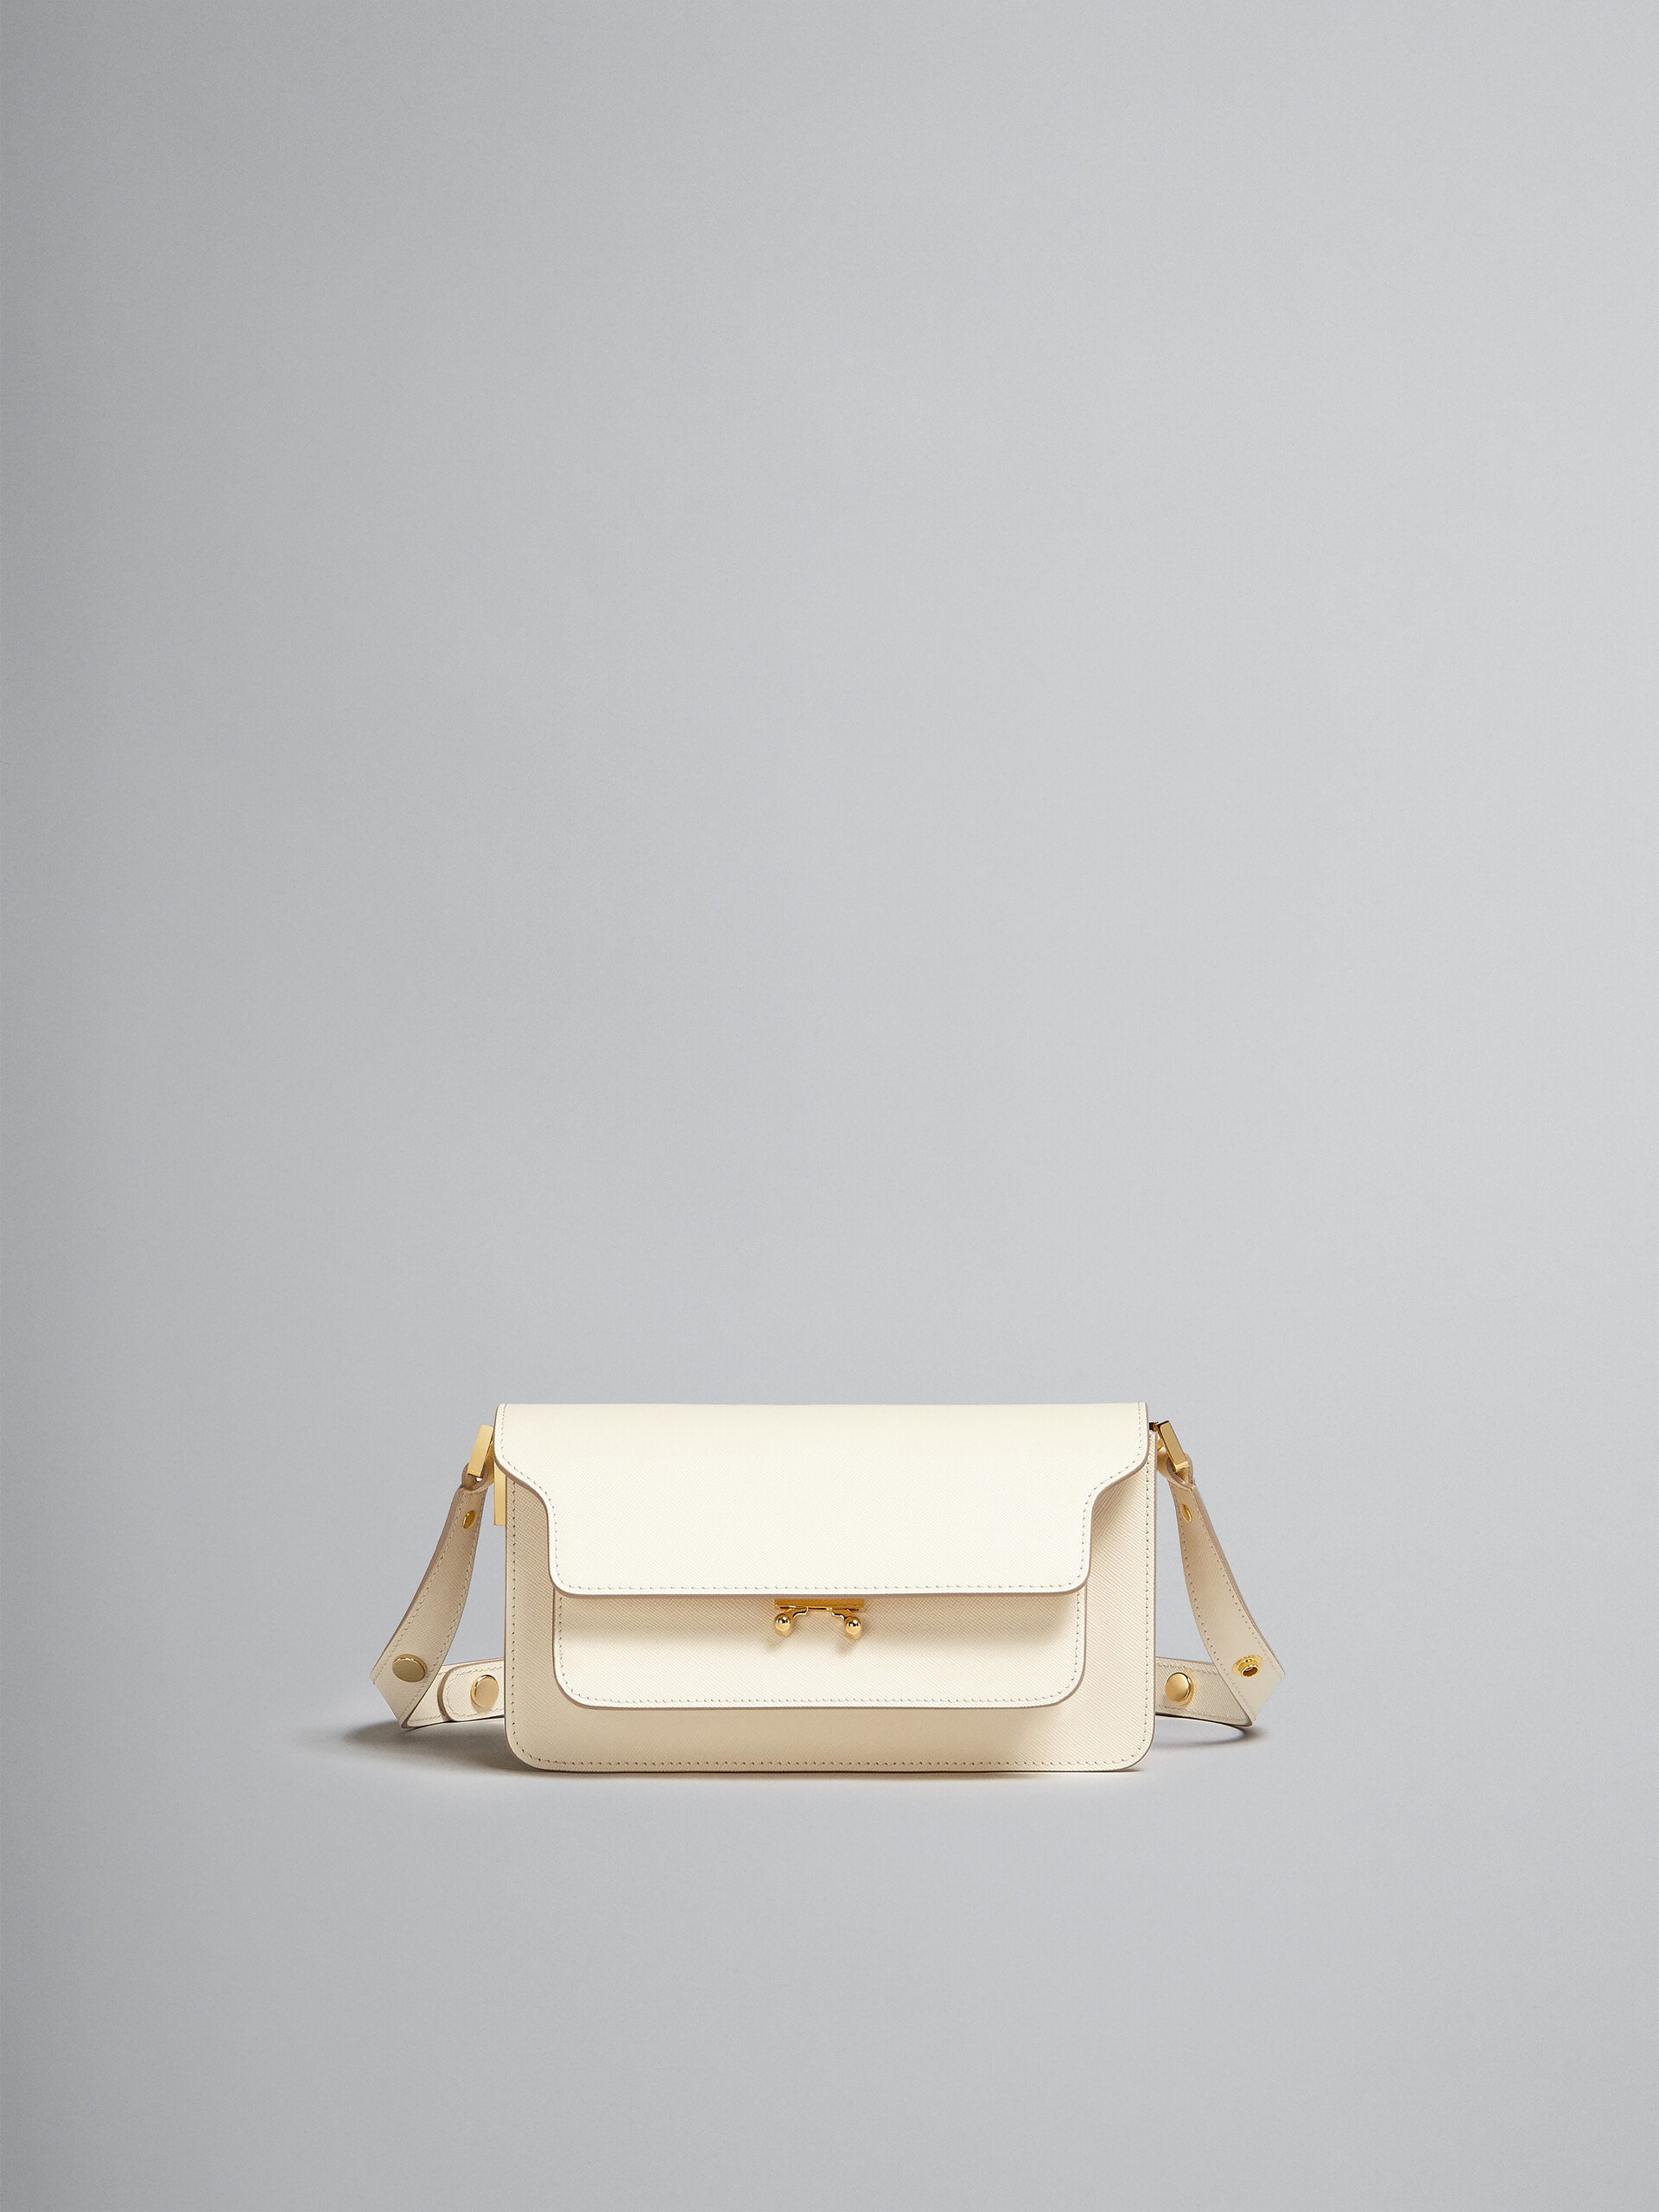 Sac Trunk horizontal en cuir Saffiano blanc - Sacs portés épaule - Image 1